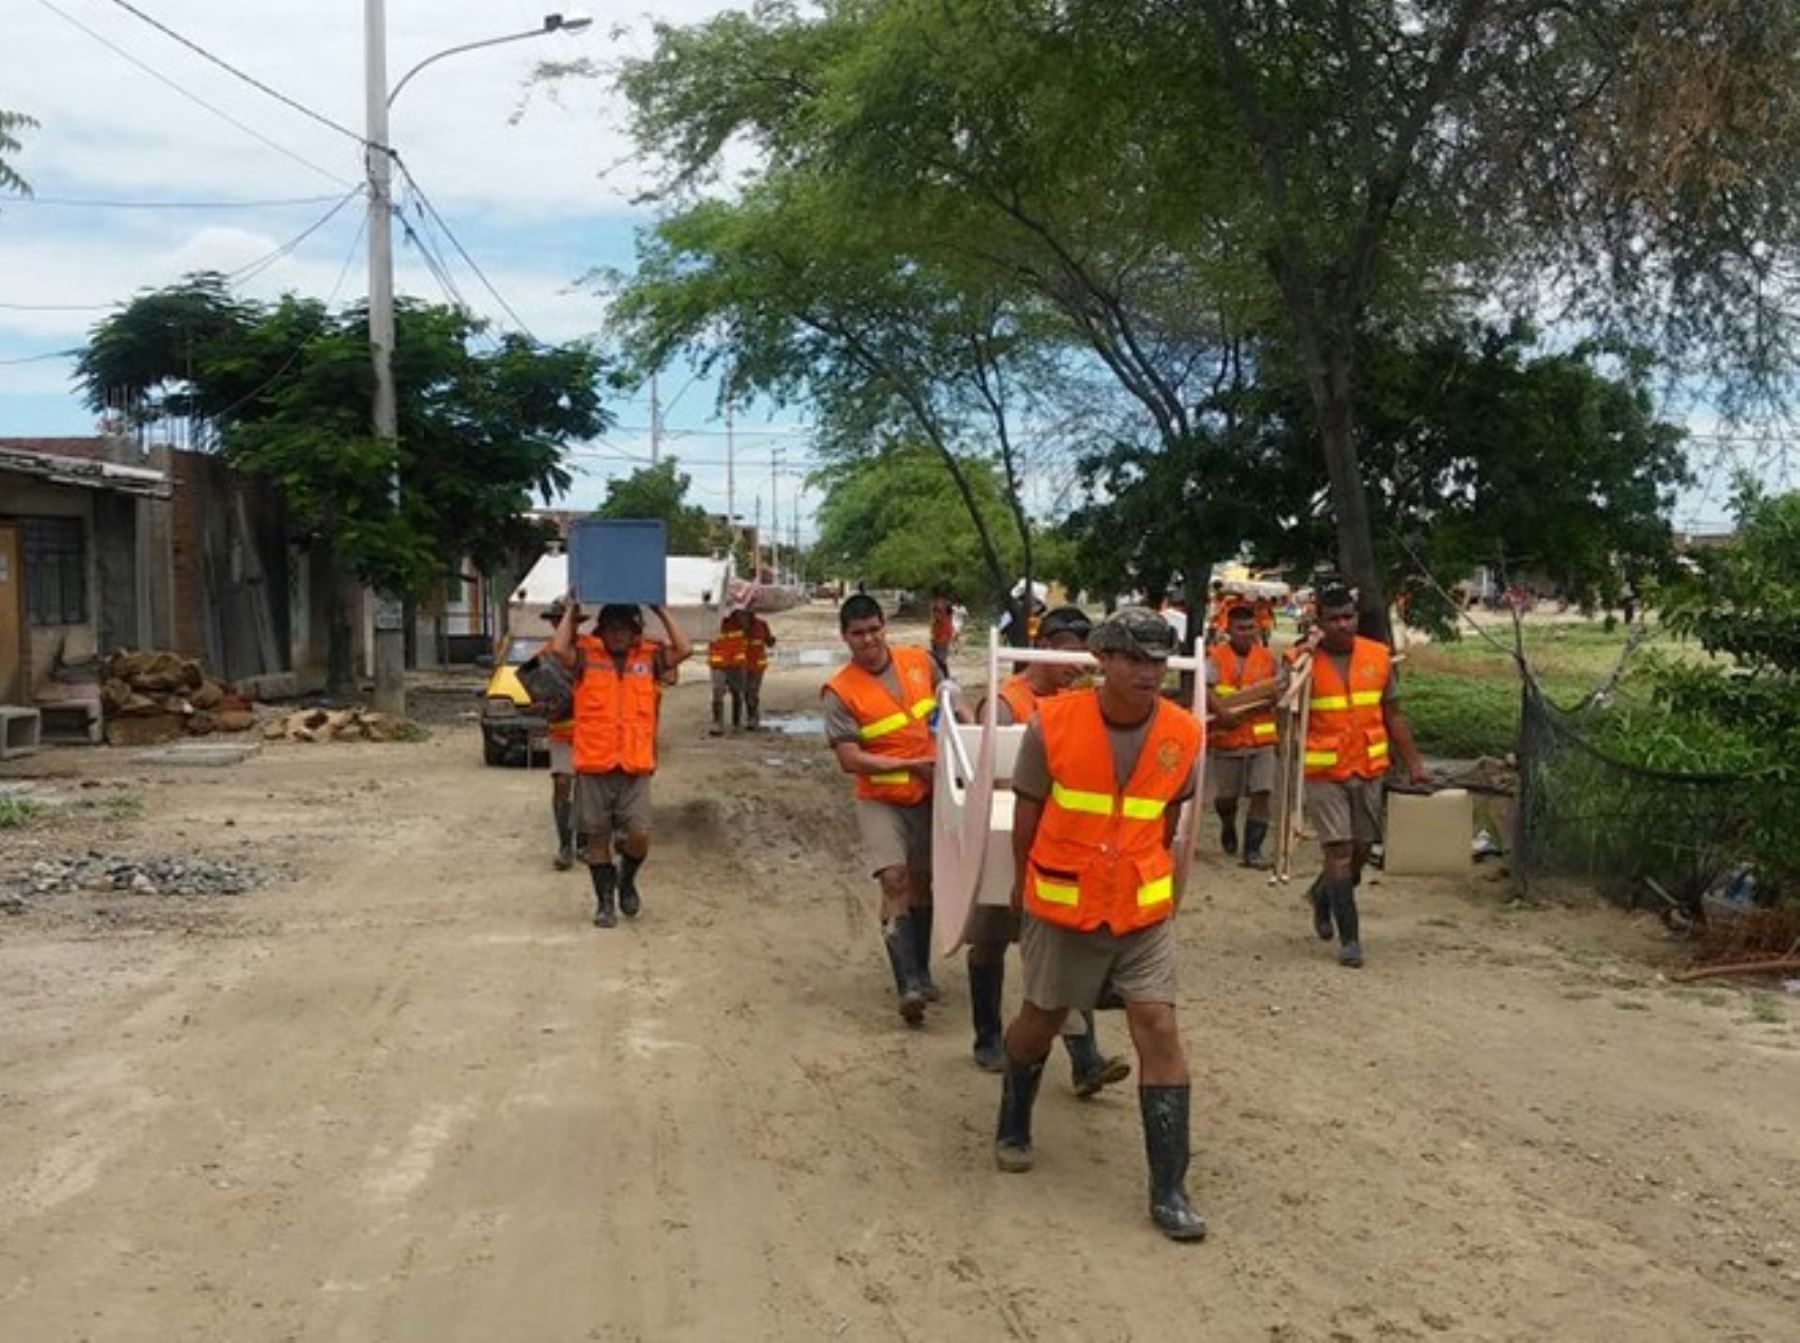 Soldados del Agrupamiento de Artillería Inclán, del Ejército peruano, participaron en la evacuación de decenas de damnificados de zonas afectadas por las inundaciones provocadas por las persistentes lluvias.